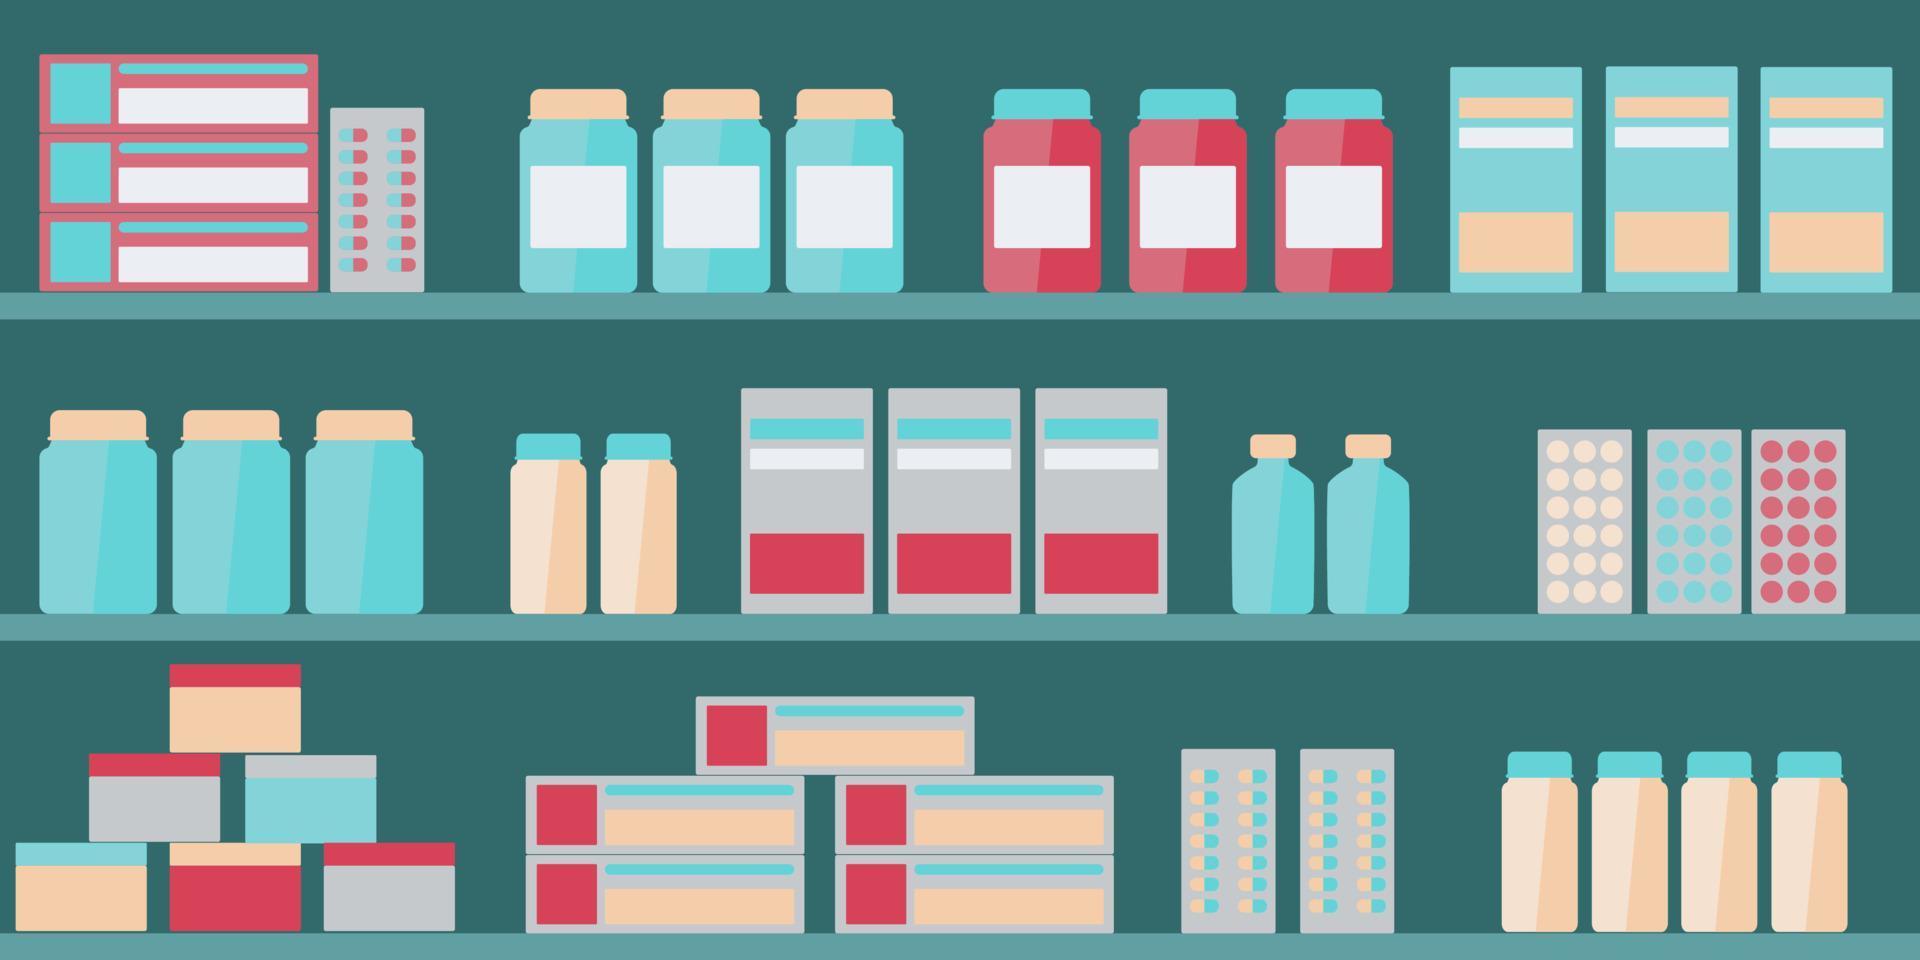 apotheekplanken in drogisterij met pil, voorwerpen, capsule en antibiotica. medisch concept met plank showcase. winkelen voor antibiotica, medicijnen, siroop. vector